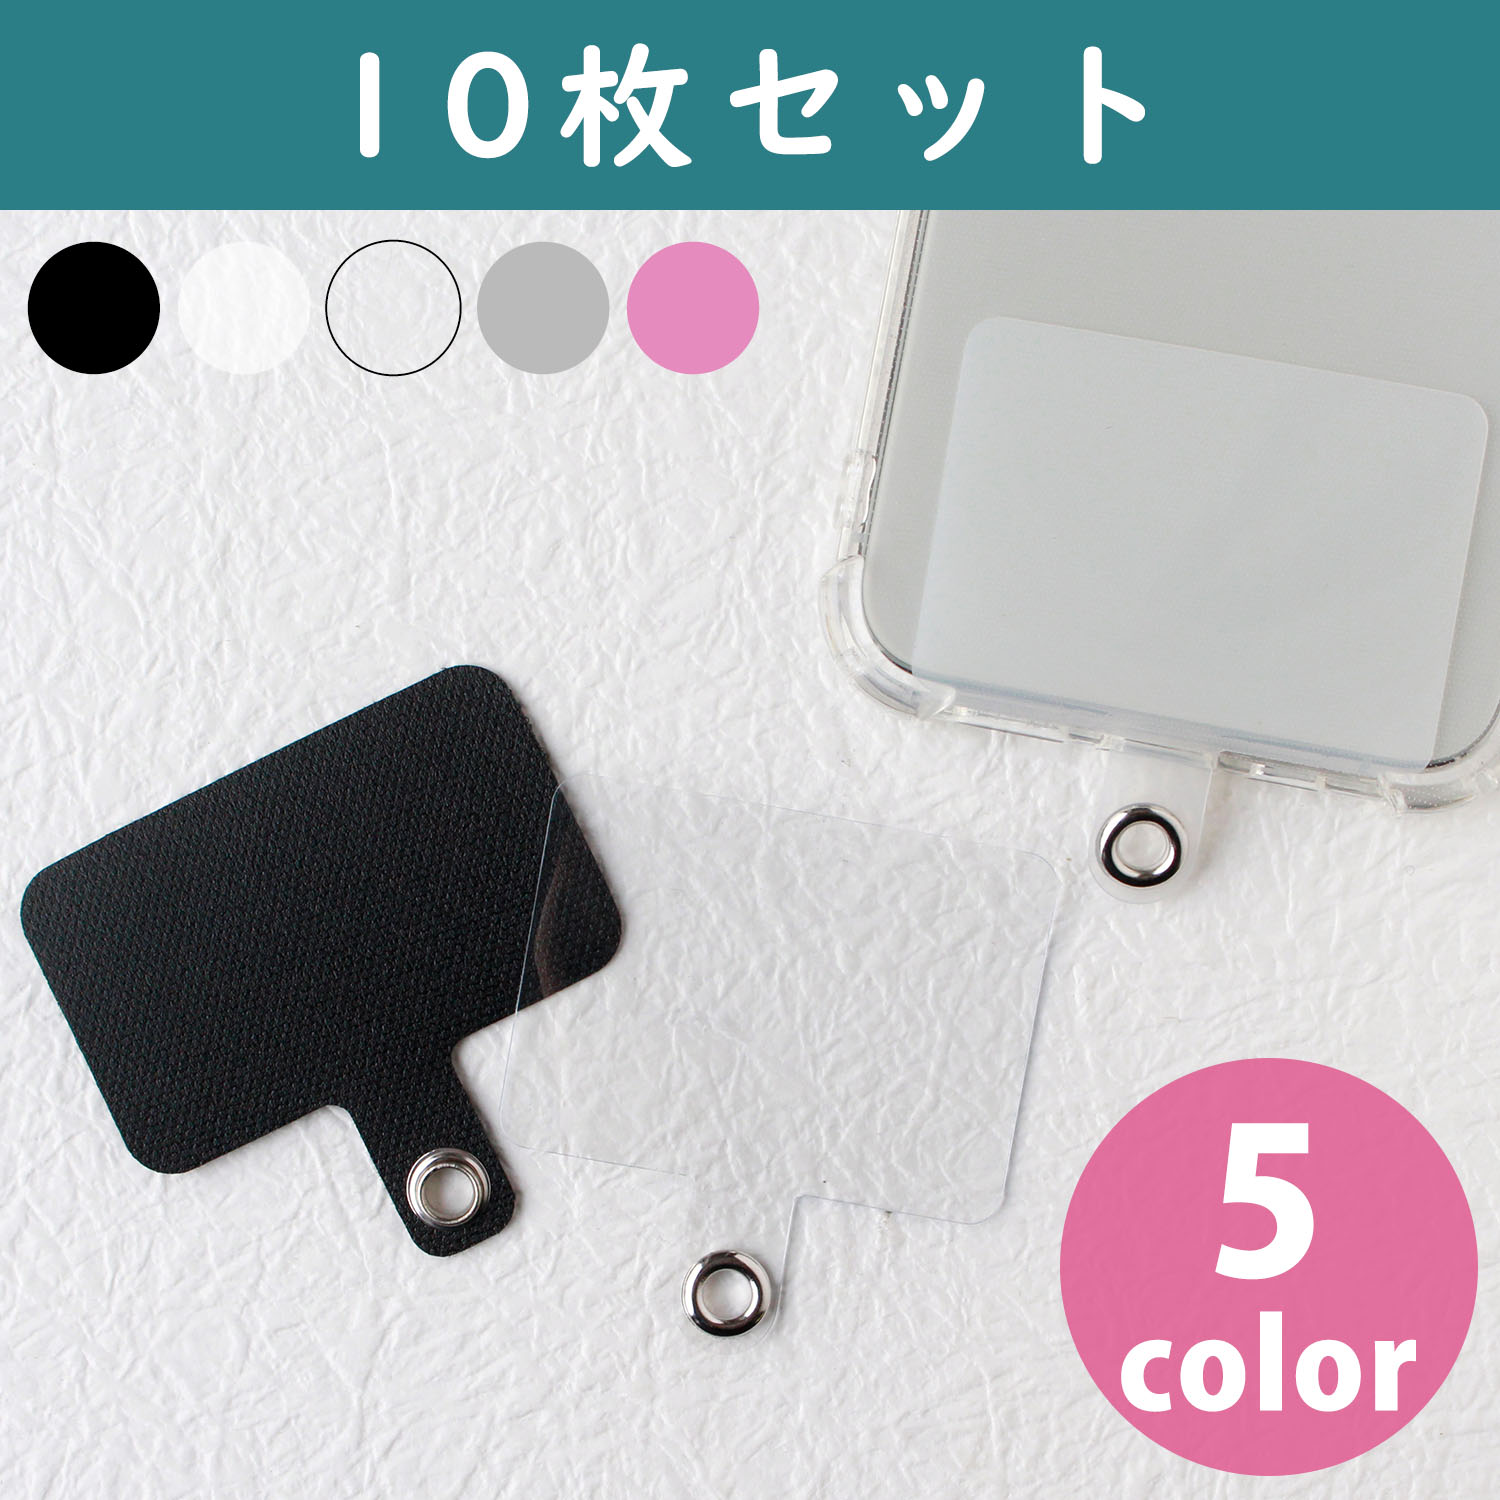 SS-10 Smartphone strap holder 10pcs (bag)